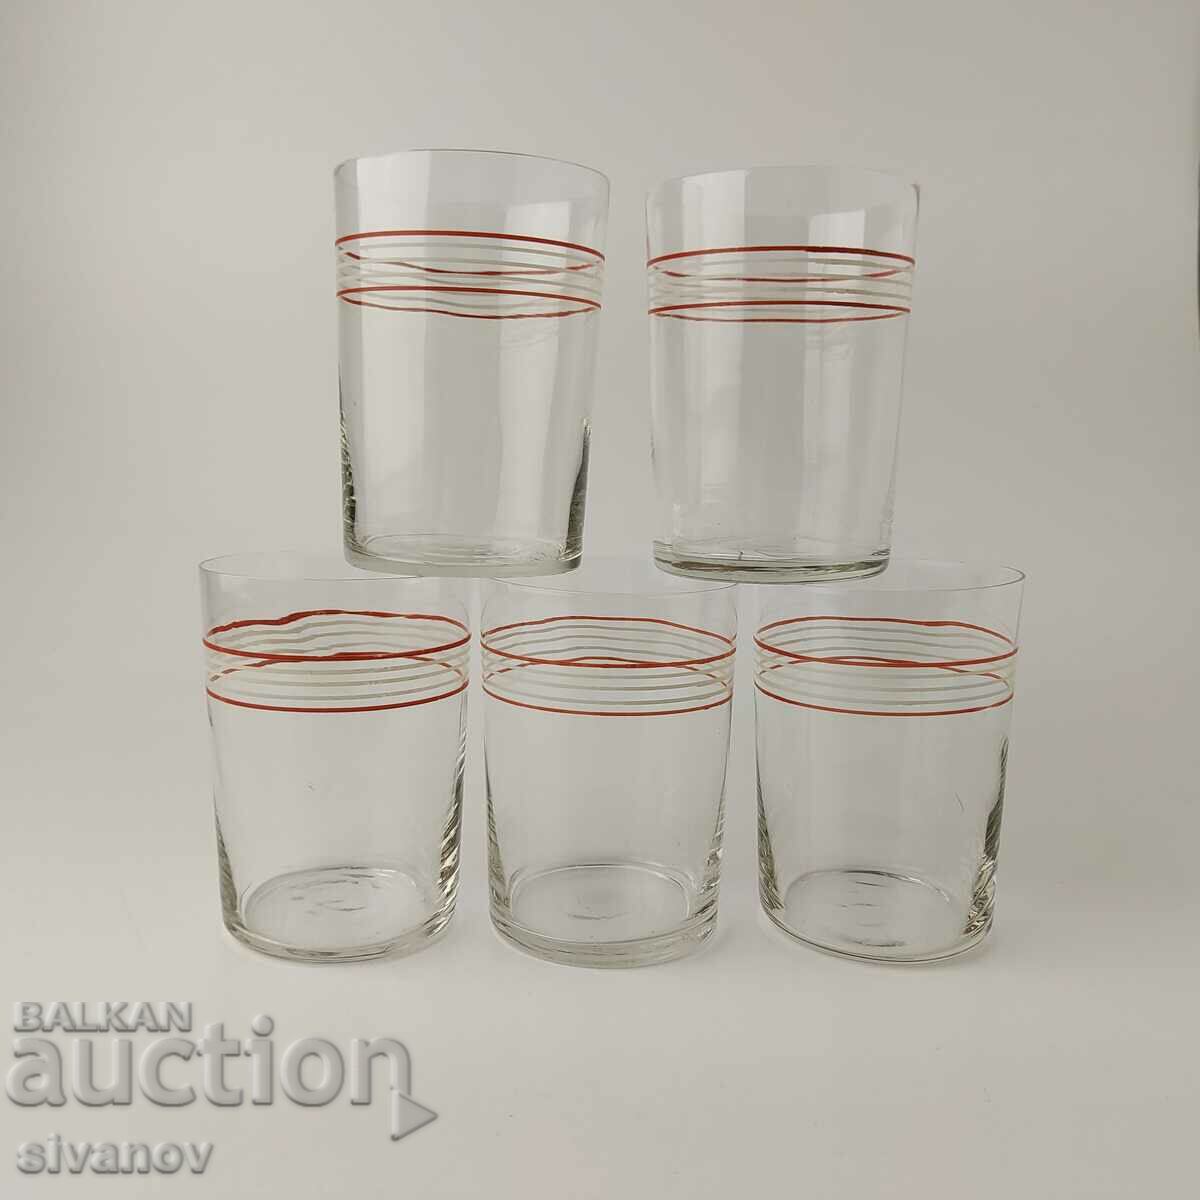 Old Soviet tea cups for stemmed glasses #5486